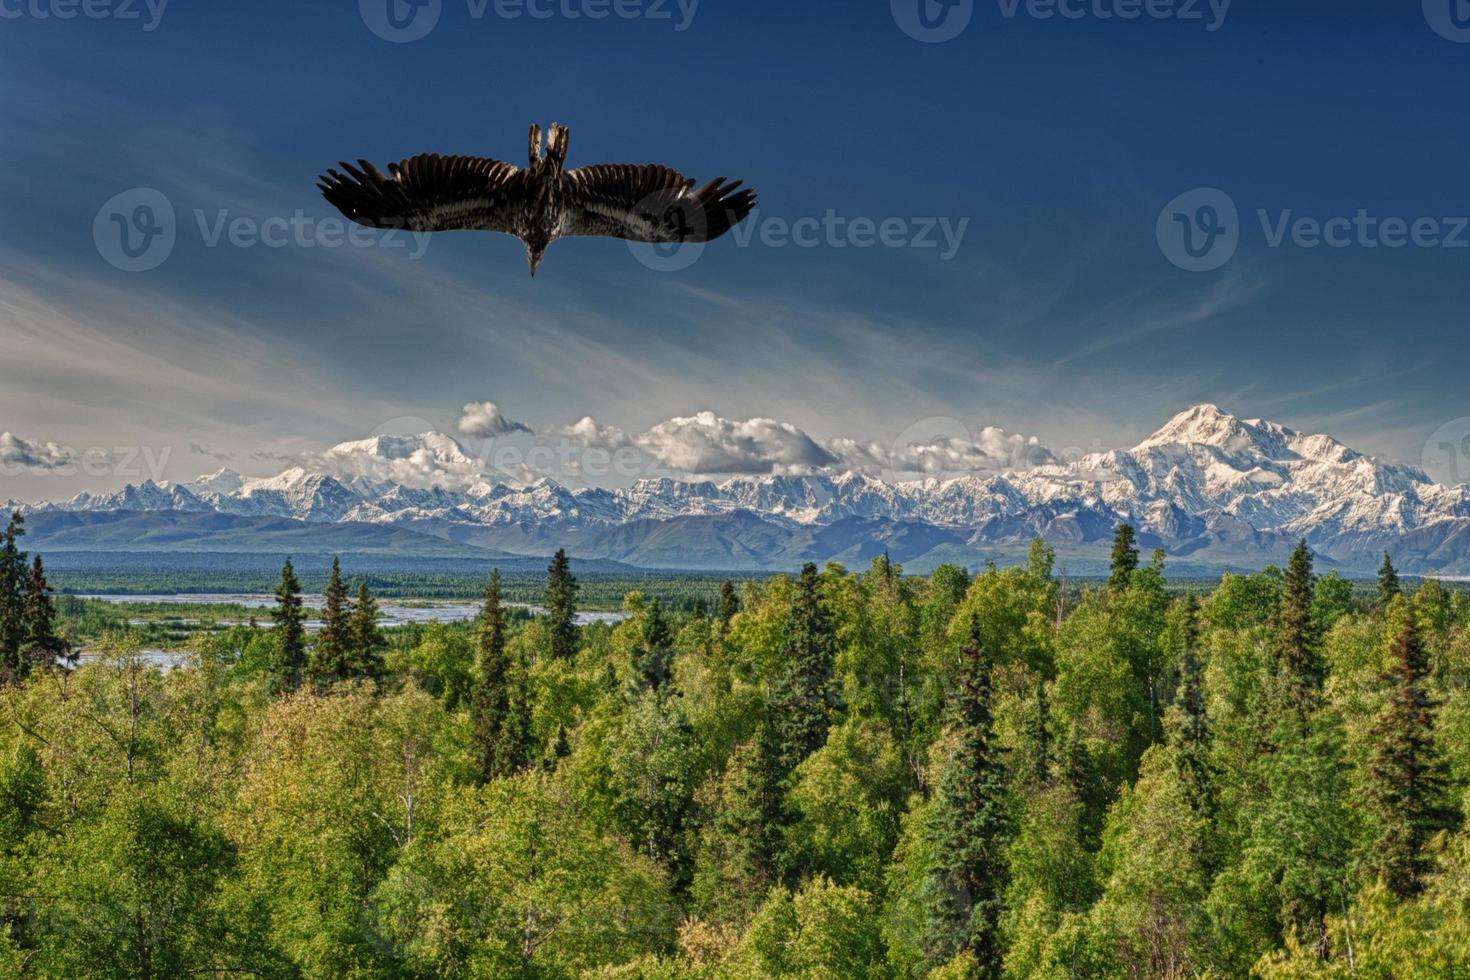 Isolated Eagle flying on blue sky background photo